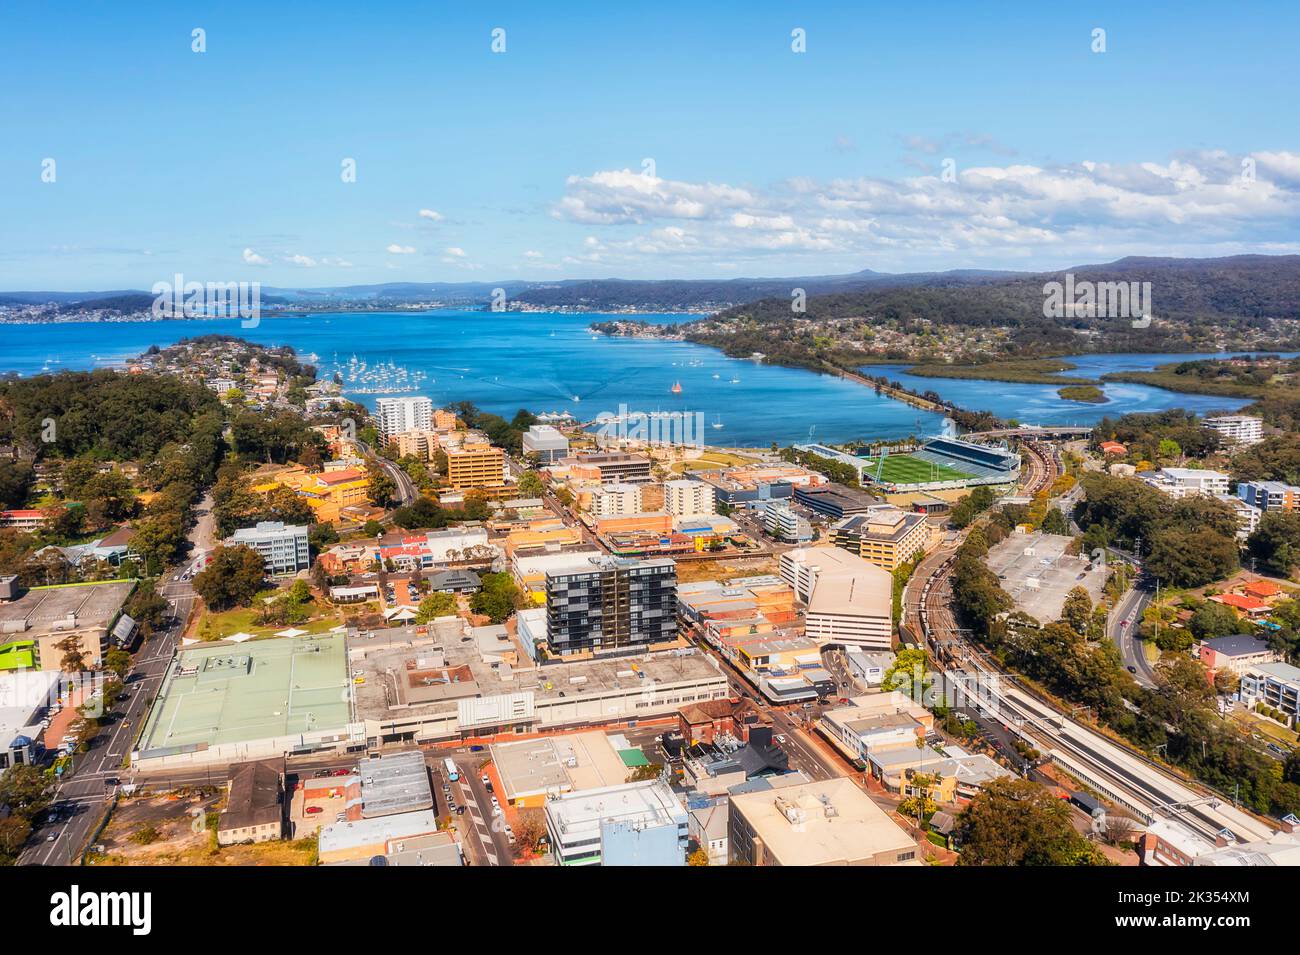 Downtown of Gosford City an der australischen Zentralküste - Waterfront of Brisbane Water Bay - Luftbild der Stadt. Stockfoto